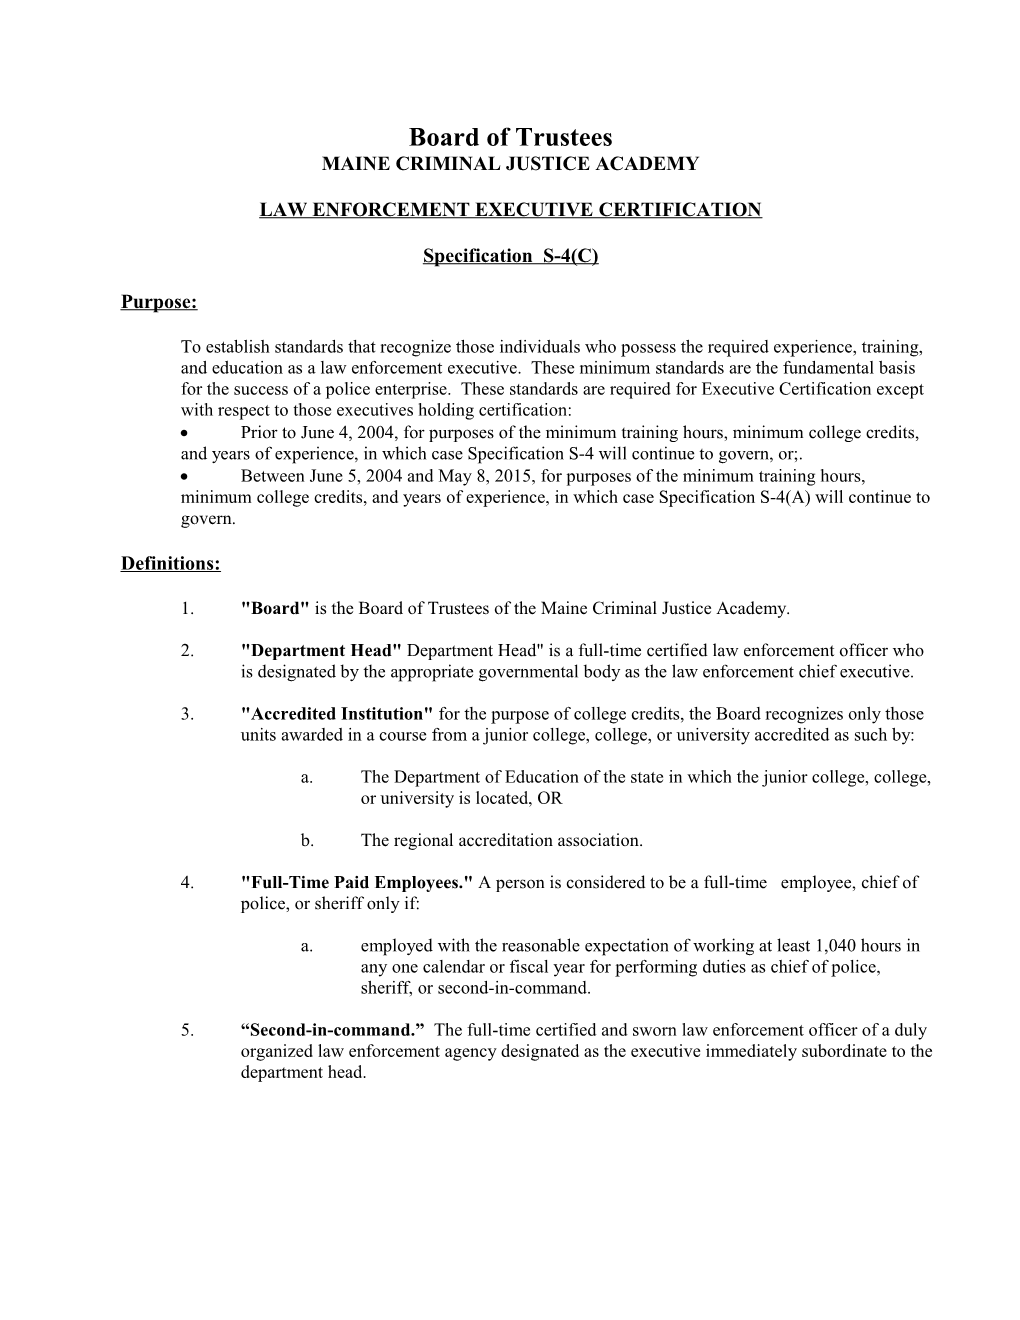 Law Enforcement Executive Certification